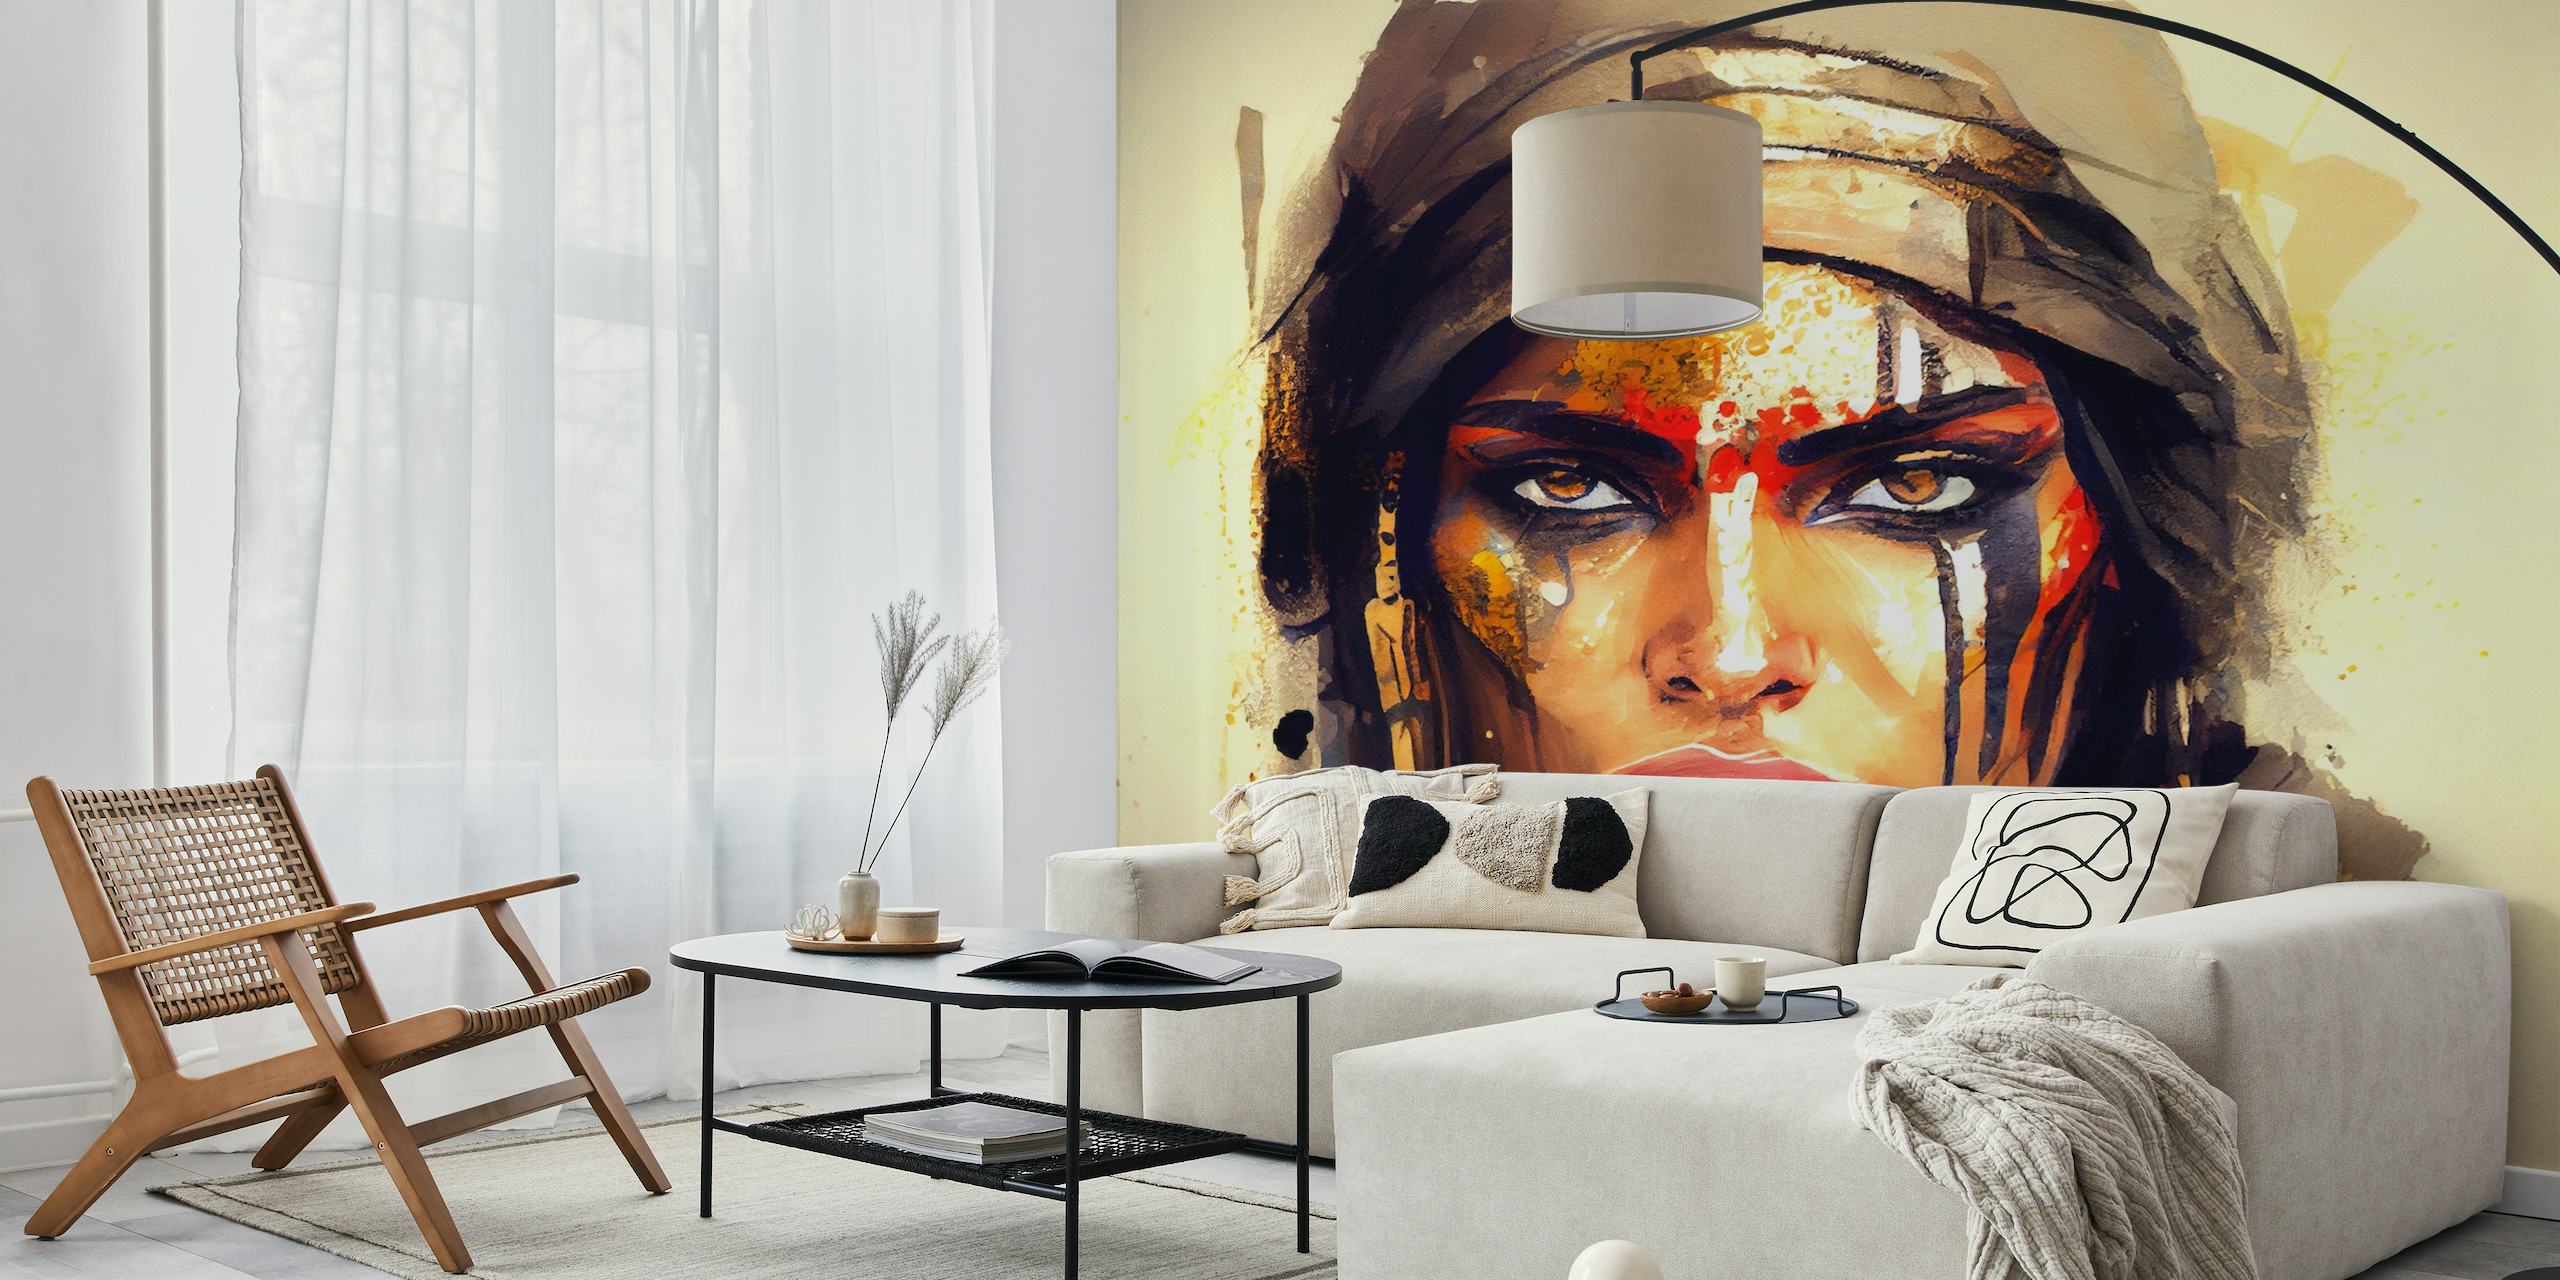 Artistieke weergave van een krachtige Egyptische krijgersvrouw met gedurfde schmink en een vastberaden uitdrukking.